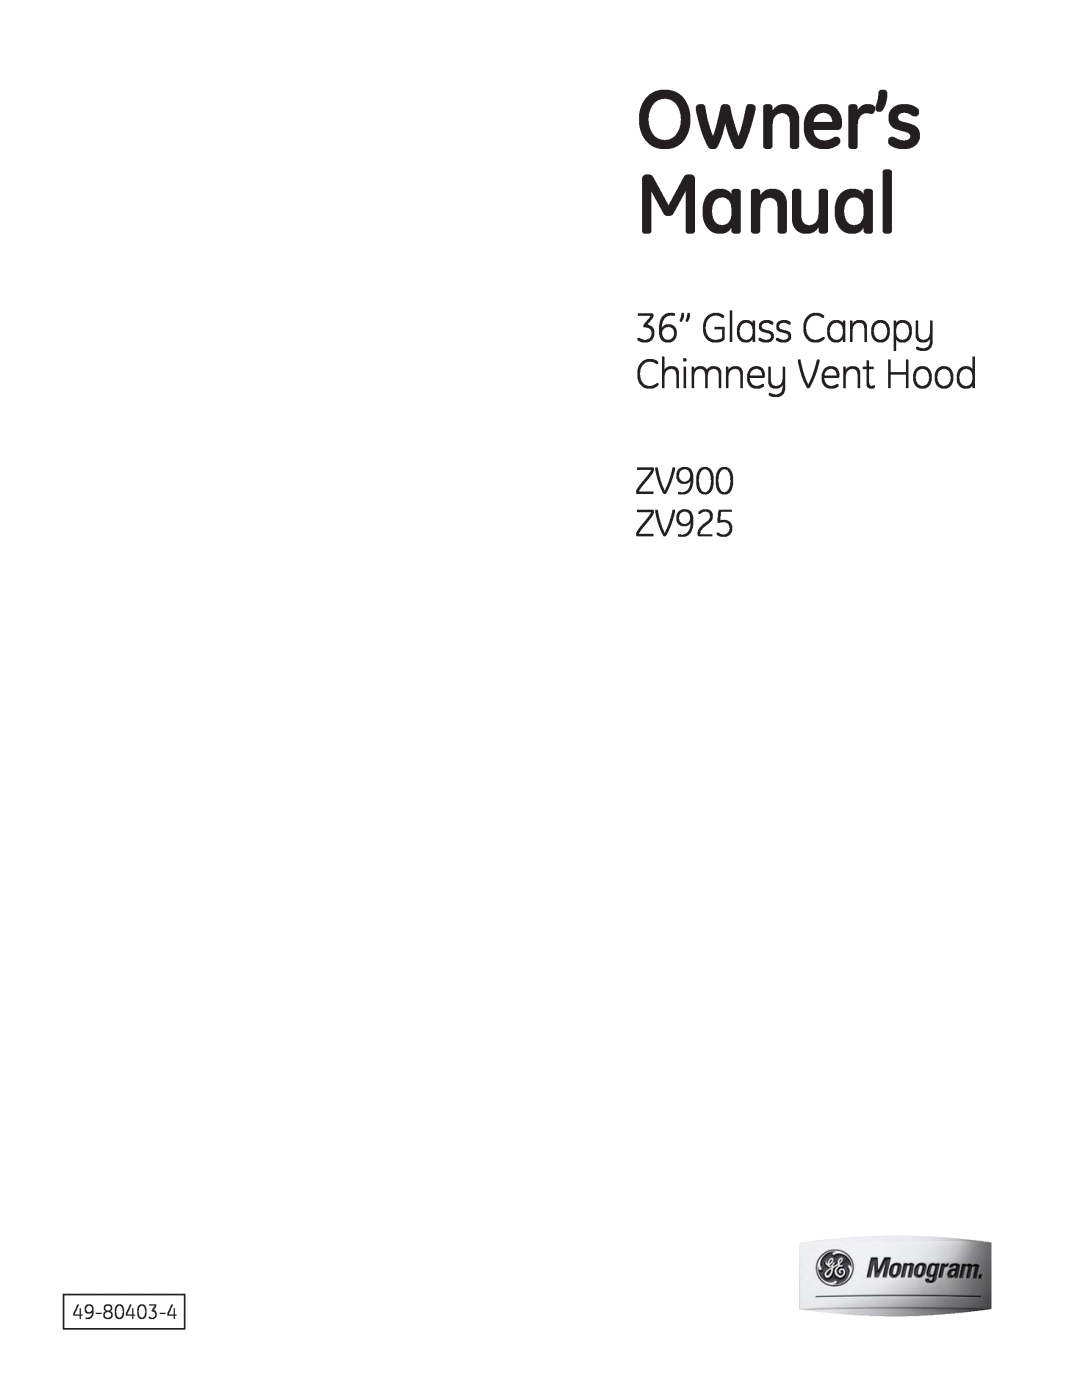 GE owner manual Gloss Cnopg Chimneg Vent Hood, ZV900 ZV925, Owners, Manual, Monogram 